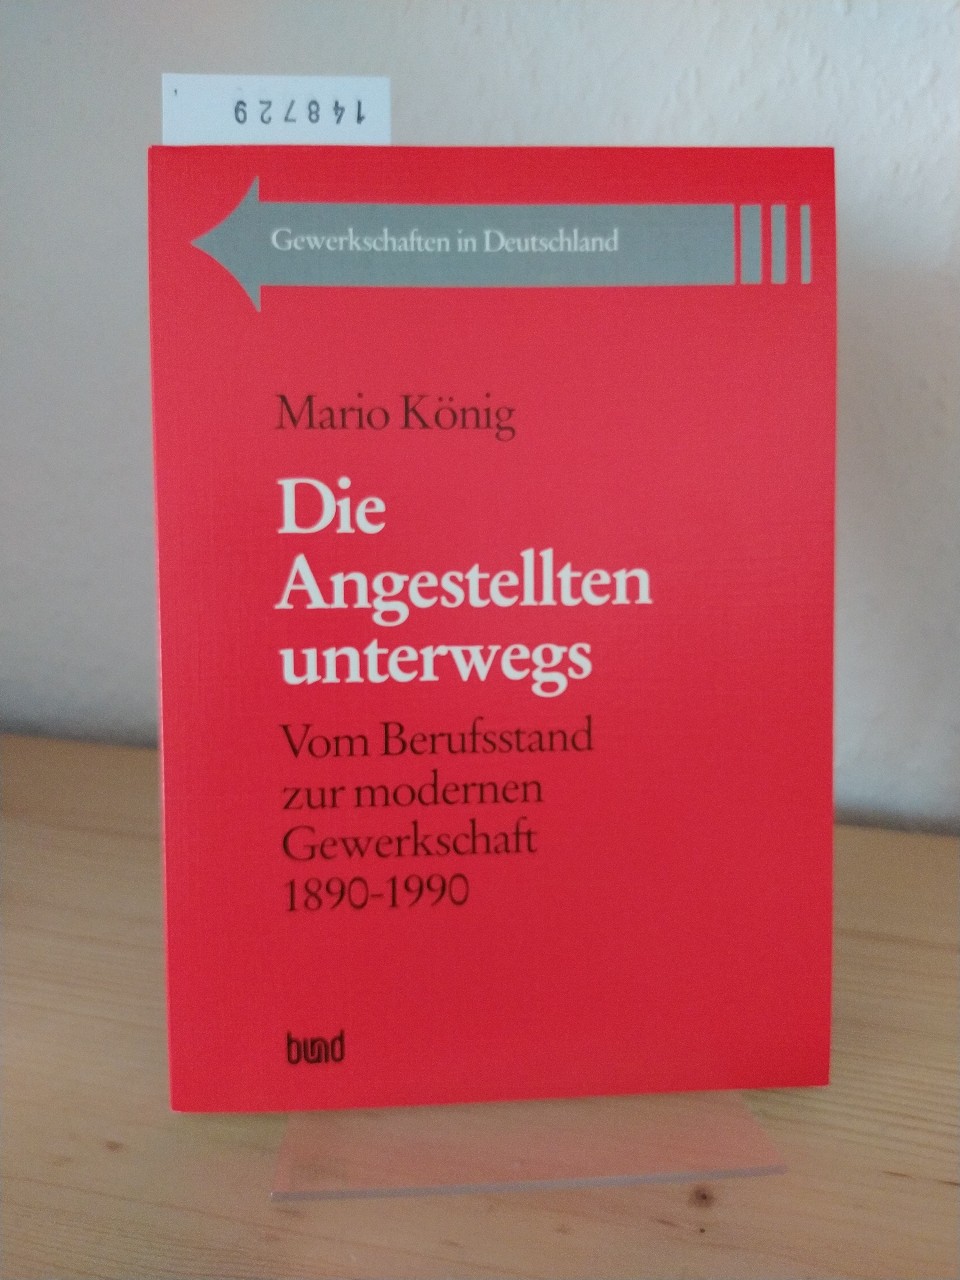 Die Angestellten unterwegs. Vom Berufsstand zur modernen Gewerkschaft 1890 bis 1990. [Von Mario König]. (= Gewerkschaften in Deutschland, Band 5). - König, Mario